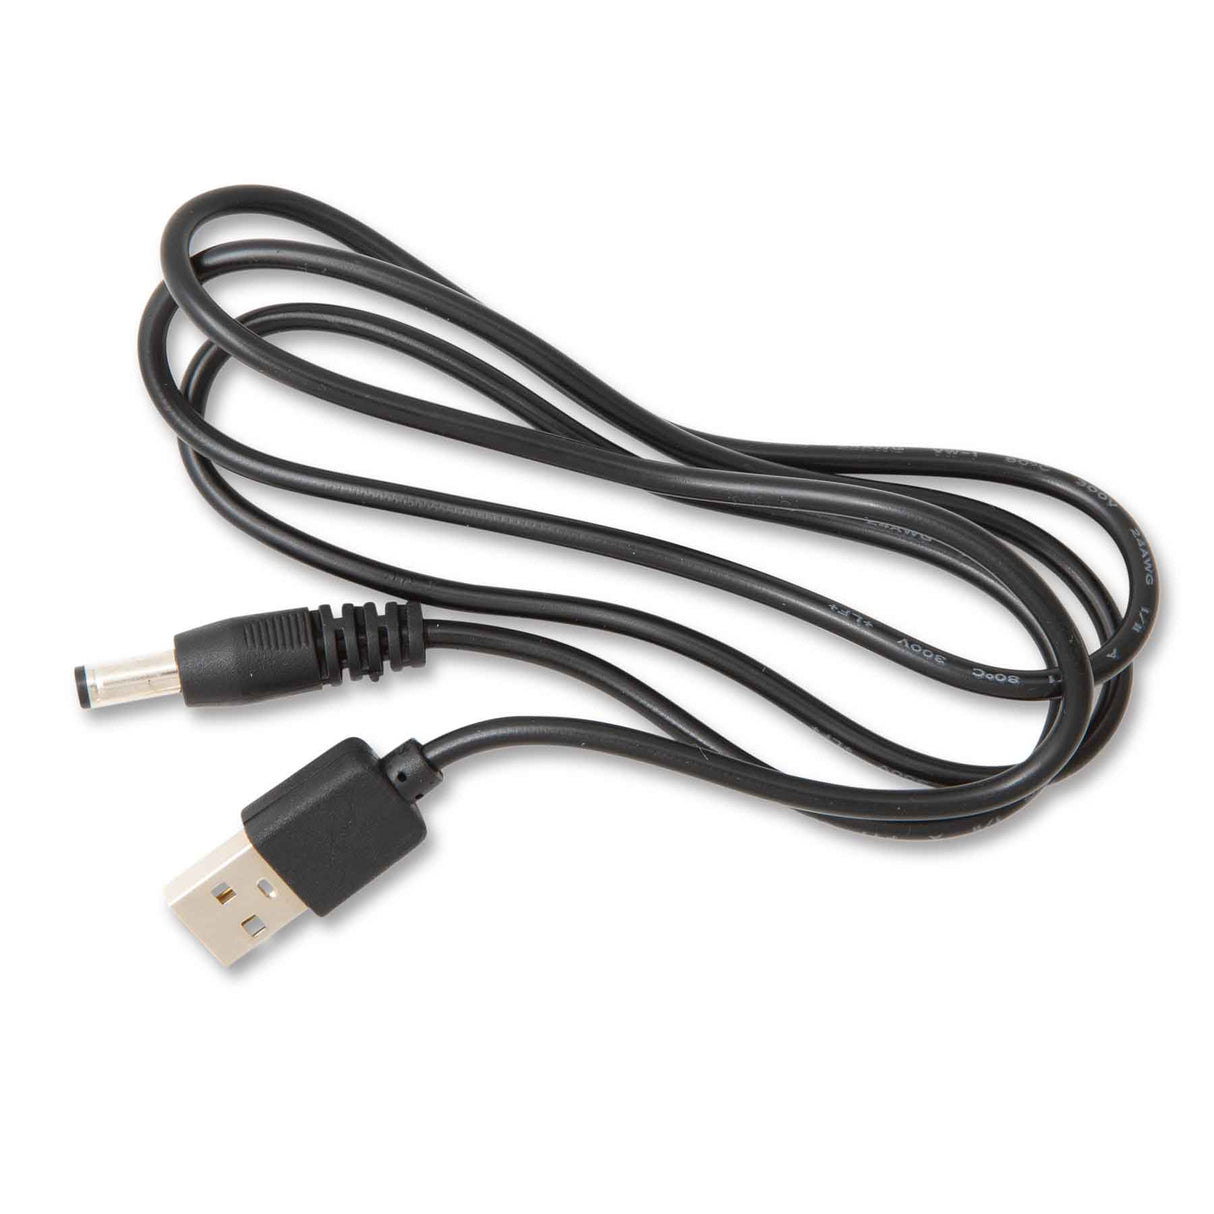 USB Charging Cord - Huntsmart